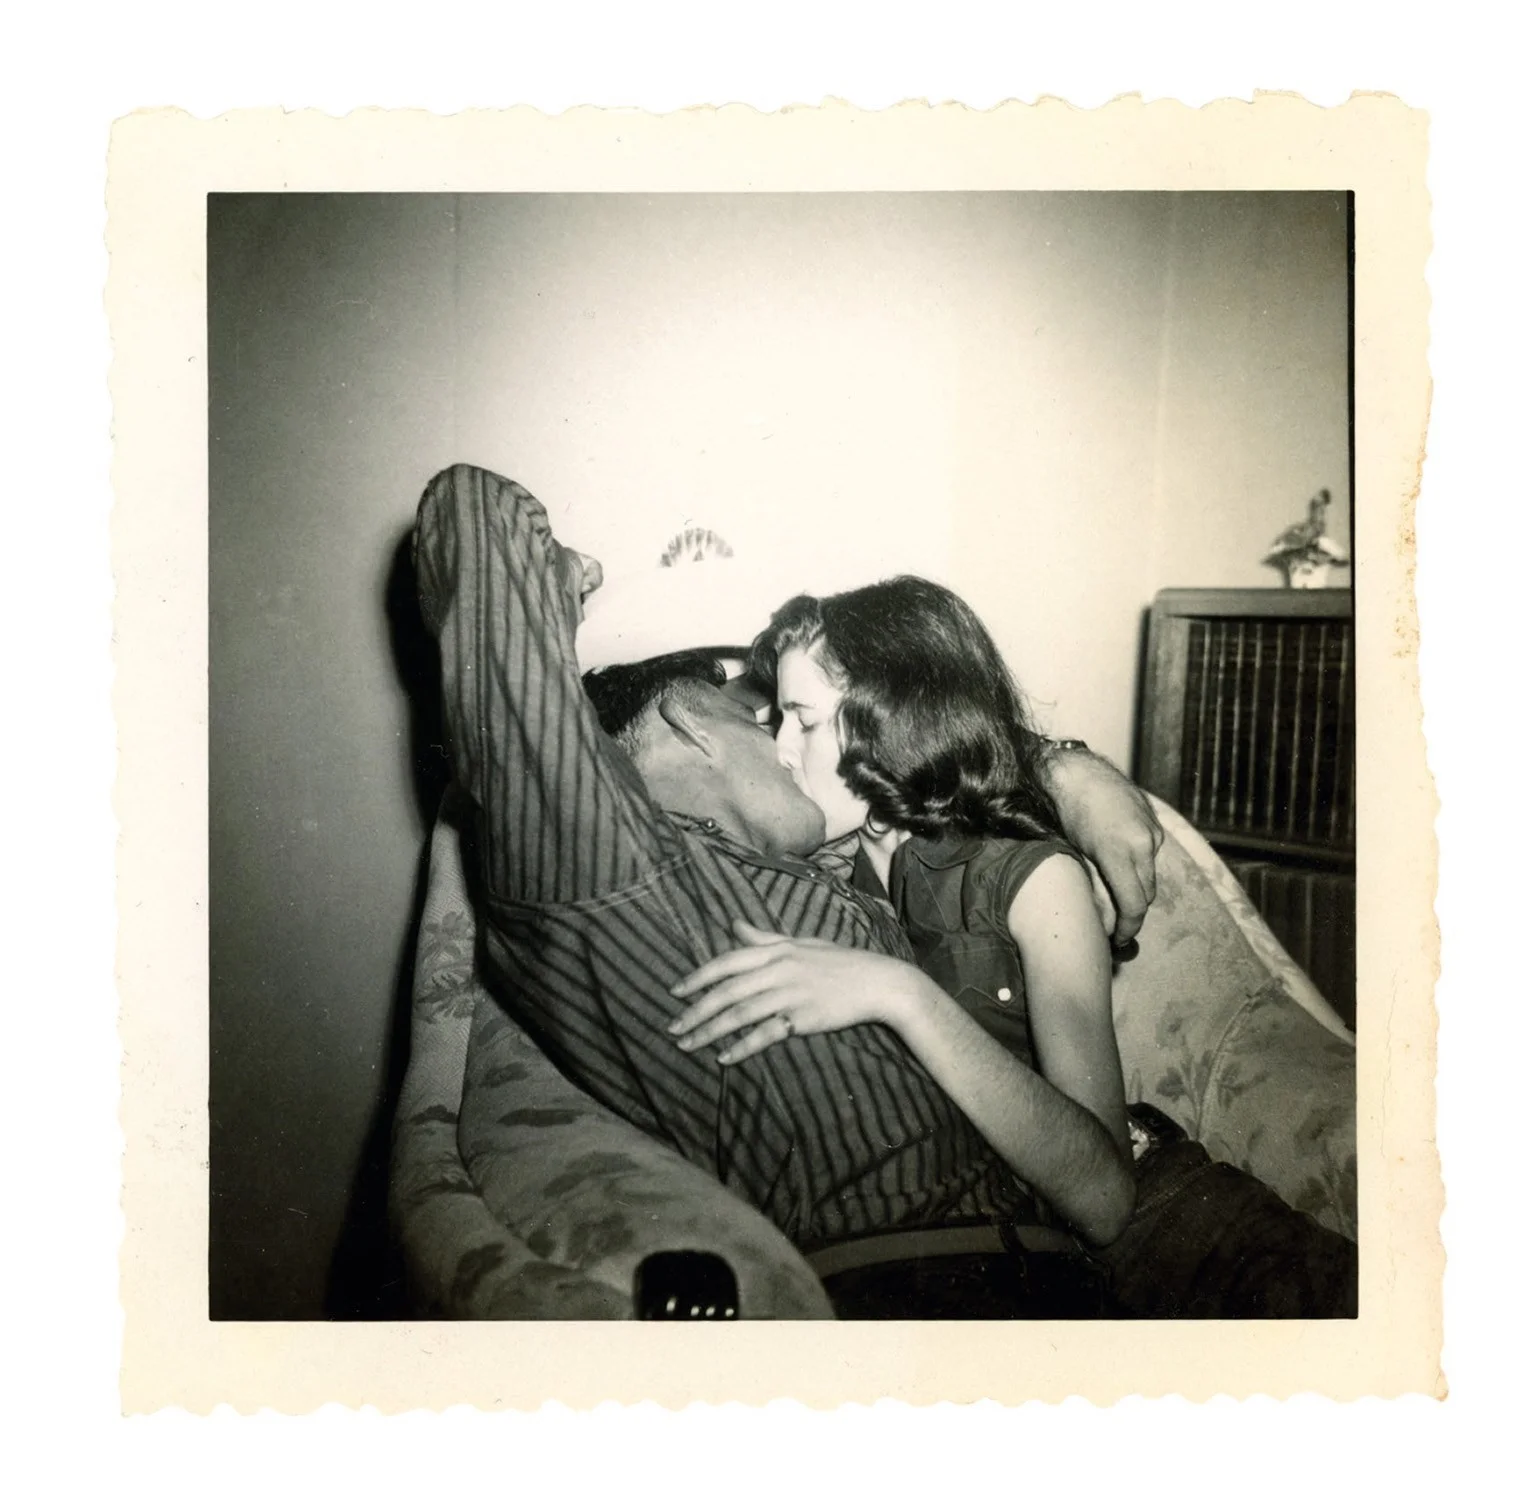 Машина времени: архивные фото о том, как целовались влюбленные 100 лет назад - фото 486029